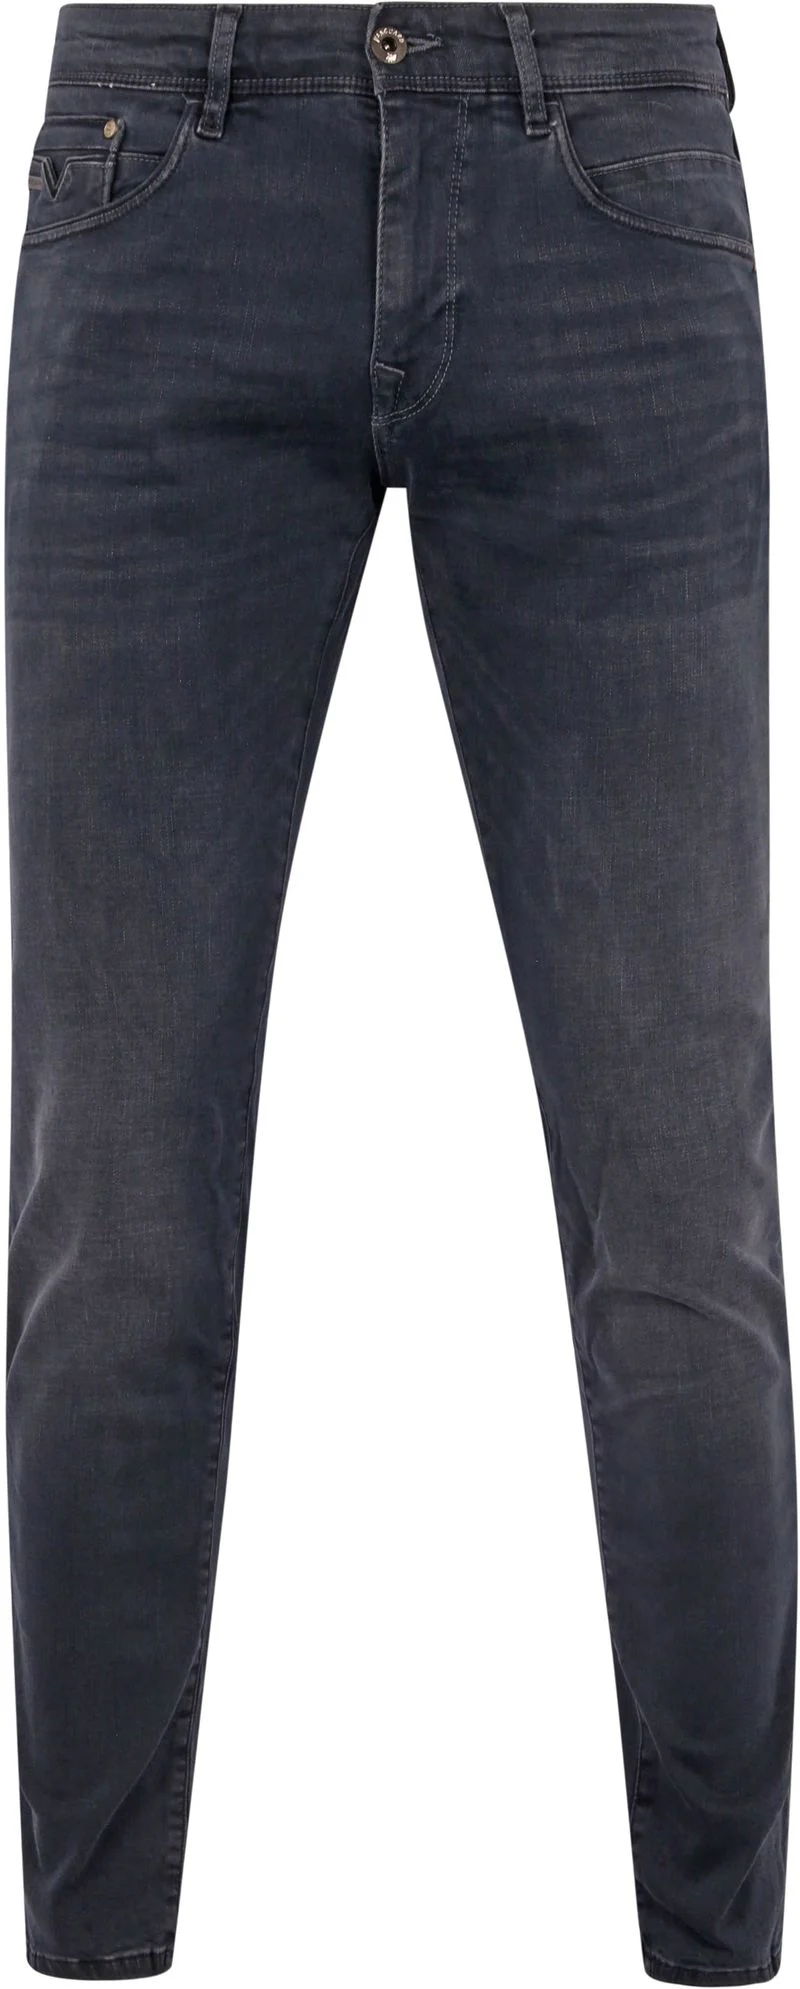 Vanguard Jeans V12 Rider Anthrazit ODB - Größe W 33 - L 34 günstig online kaufen